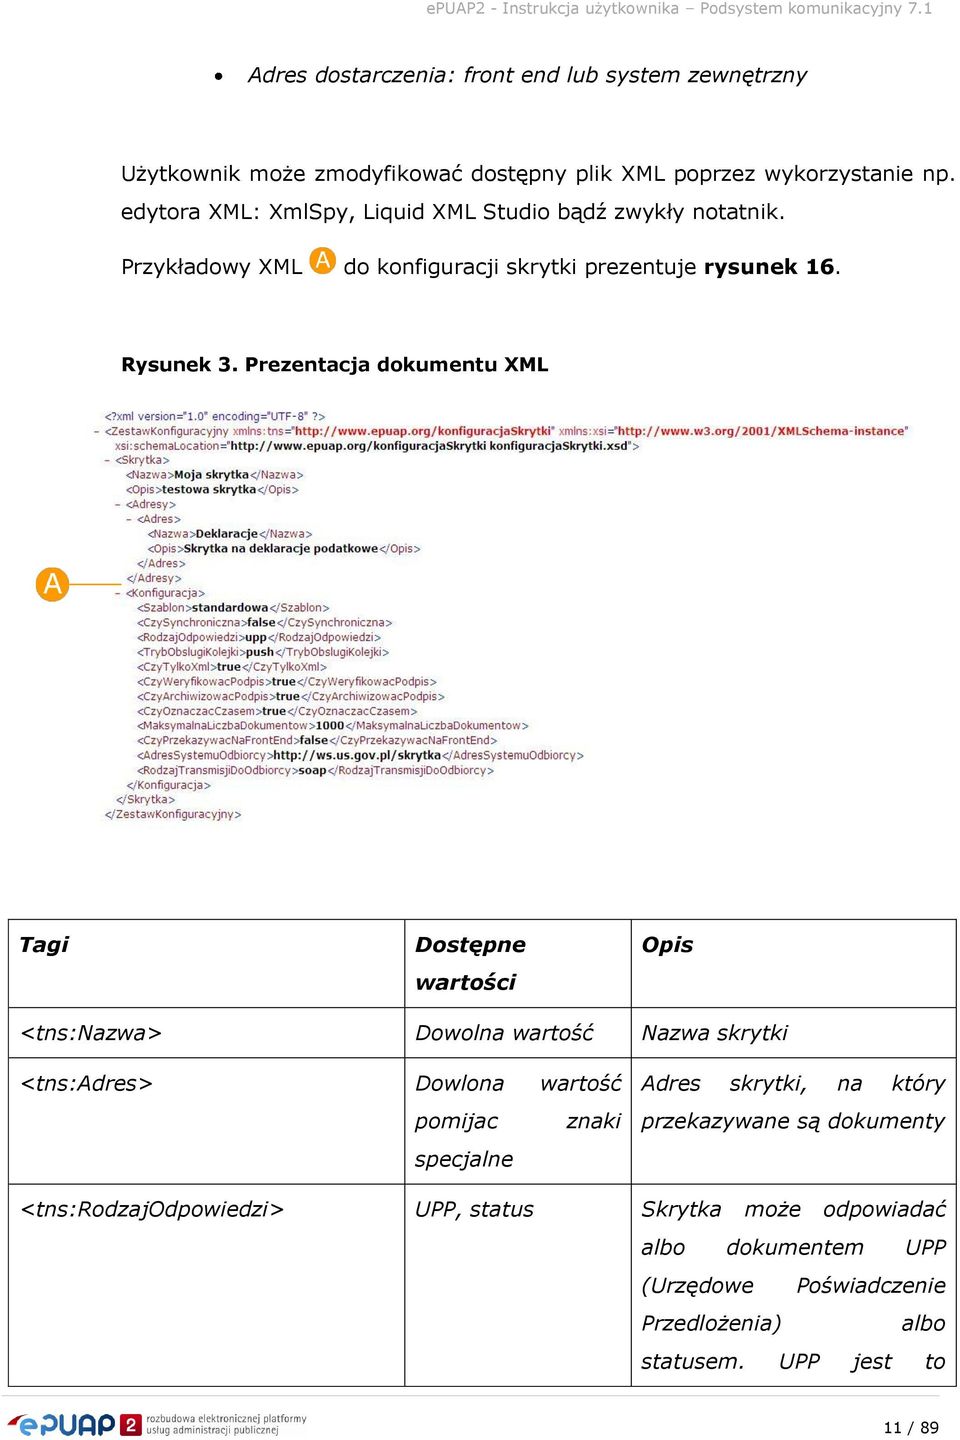 Prezentacja dokumentu XML Tagi Dostępne wartości Opis <tns:nazwa> Dowolna wartość Nazwa skrytki <tns:adres> Dowlona wartość pomijac znaki specjalne